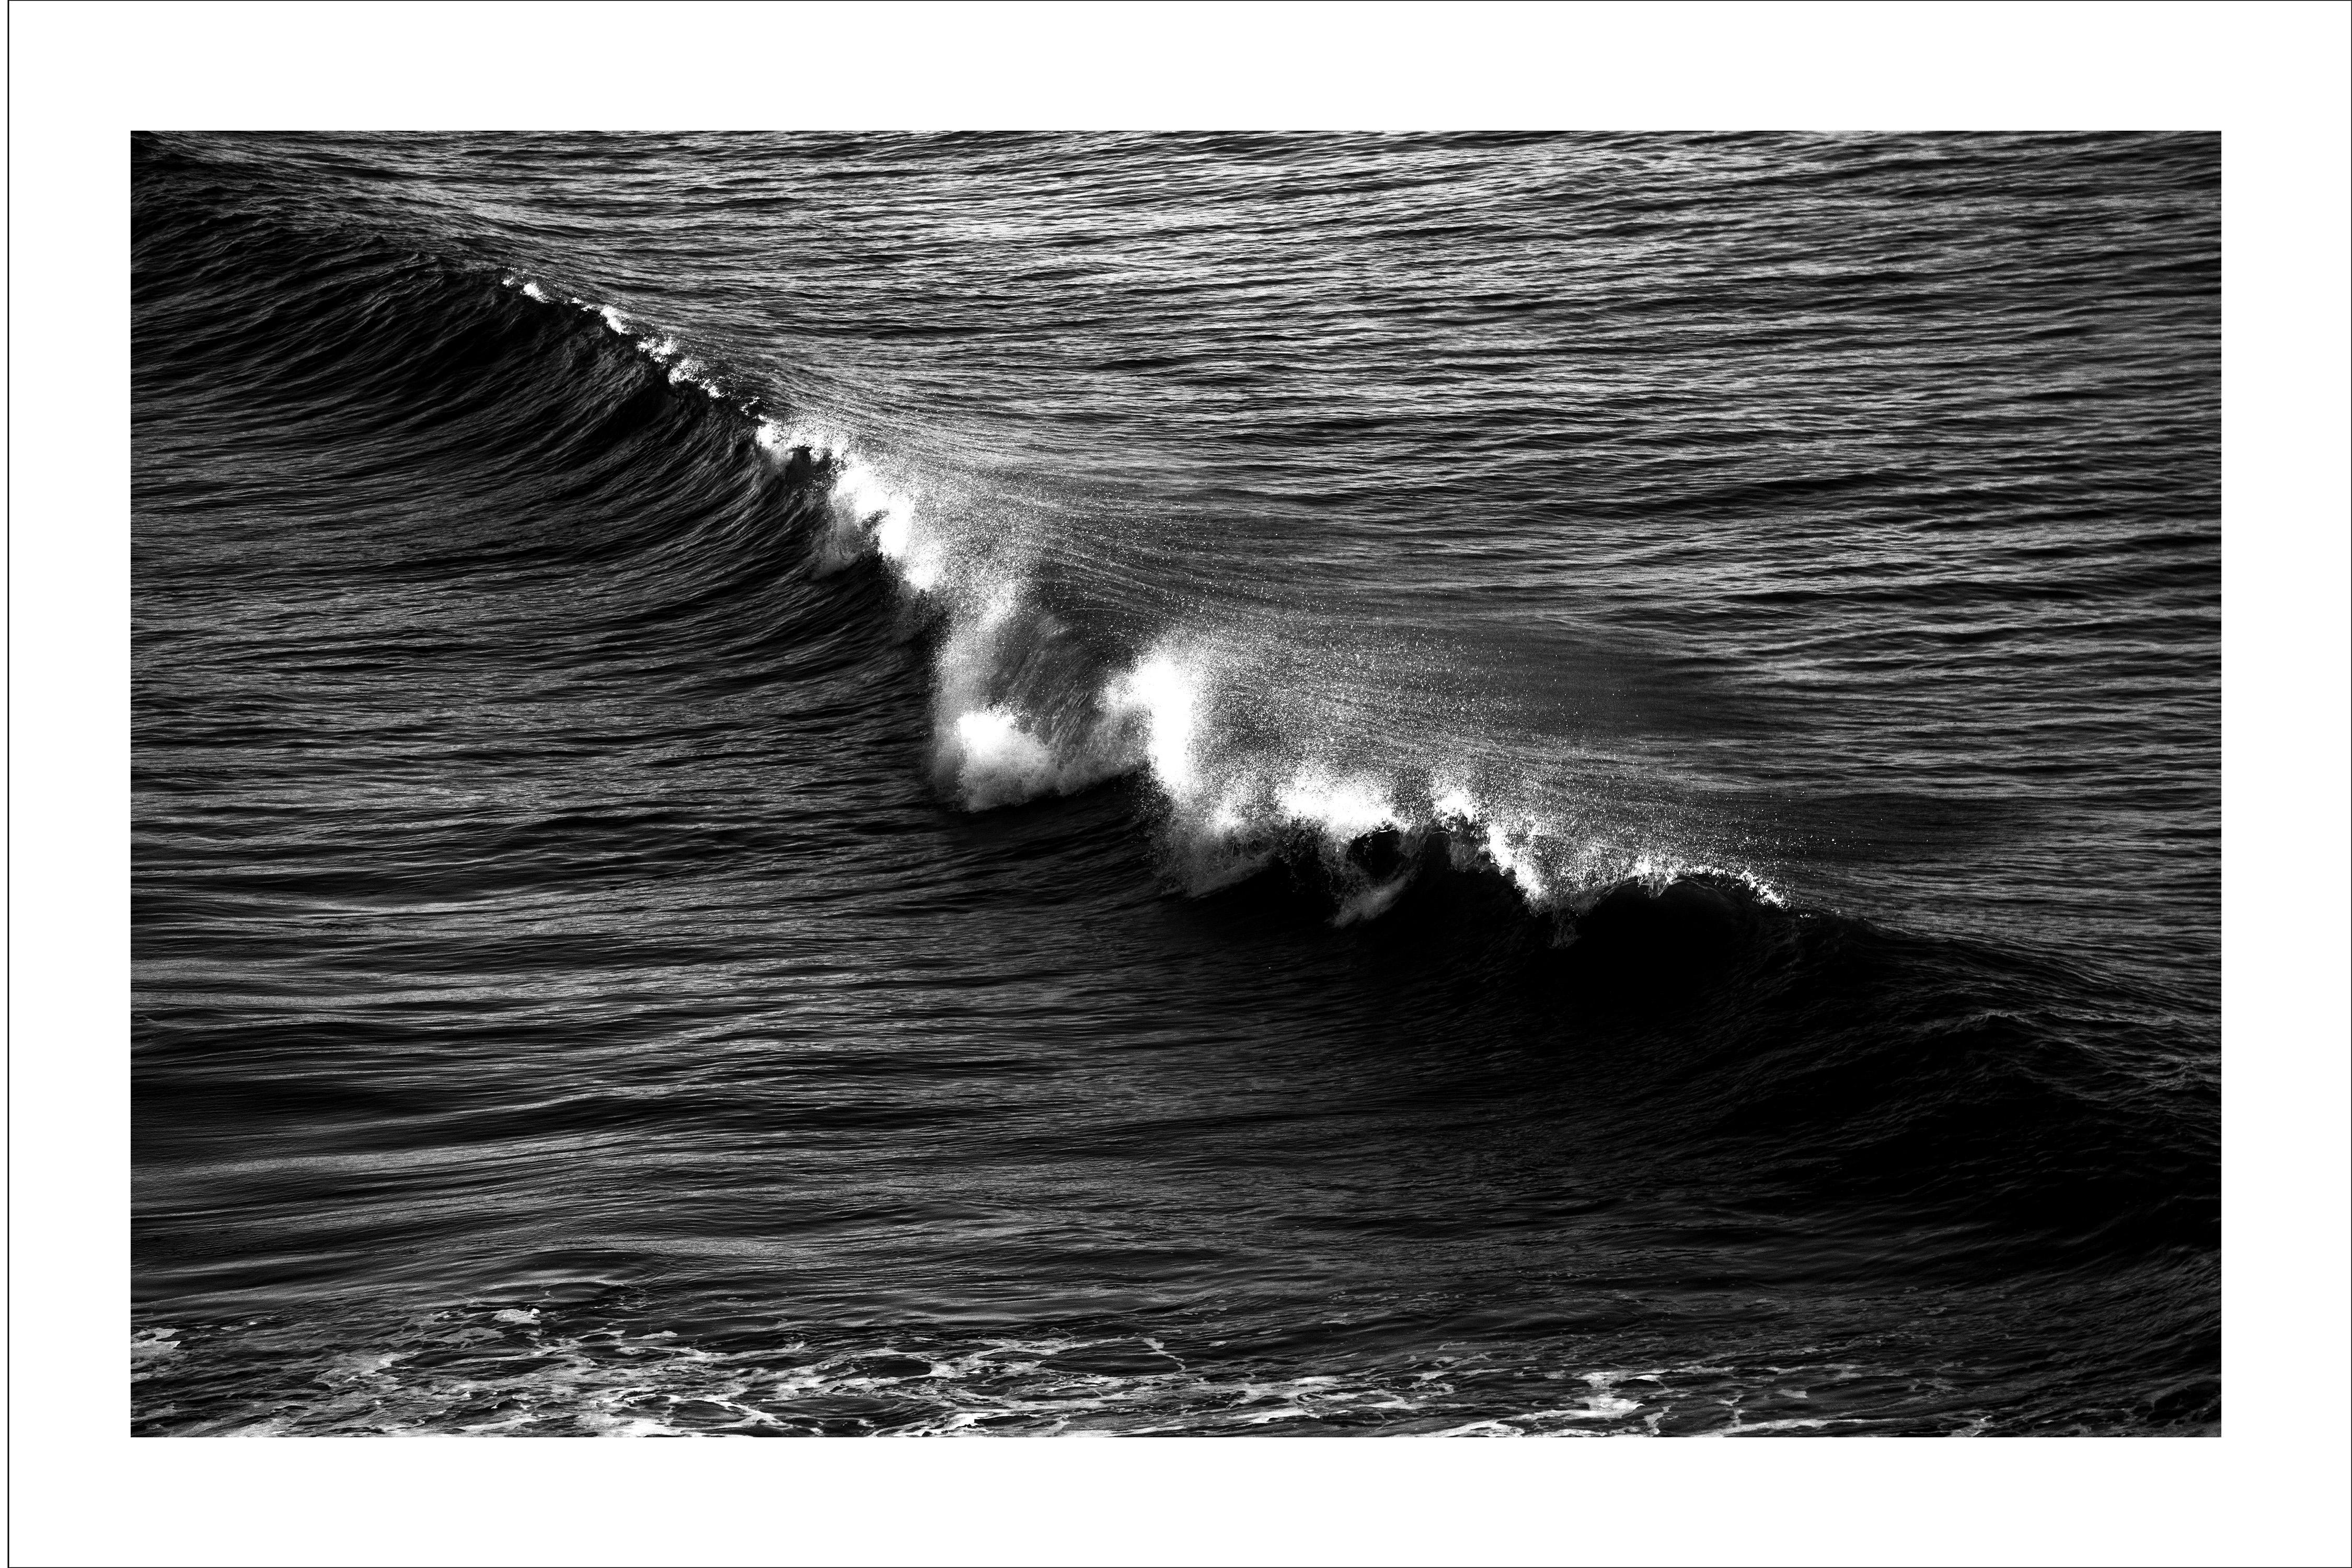 Schwarz-Weiß- Meereslandschaft von Los Angeles Crashing Wave, zeitgenössische Fotografie